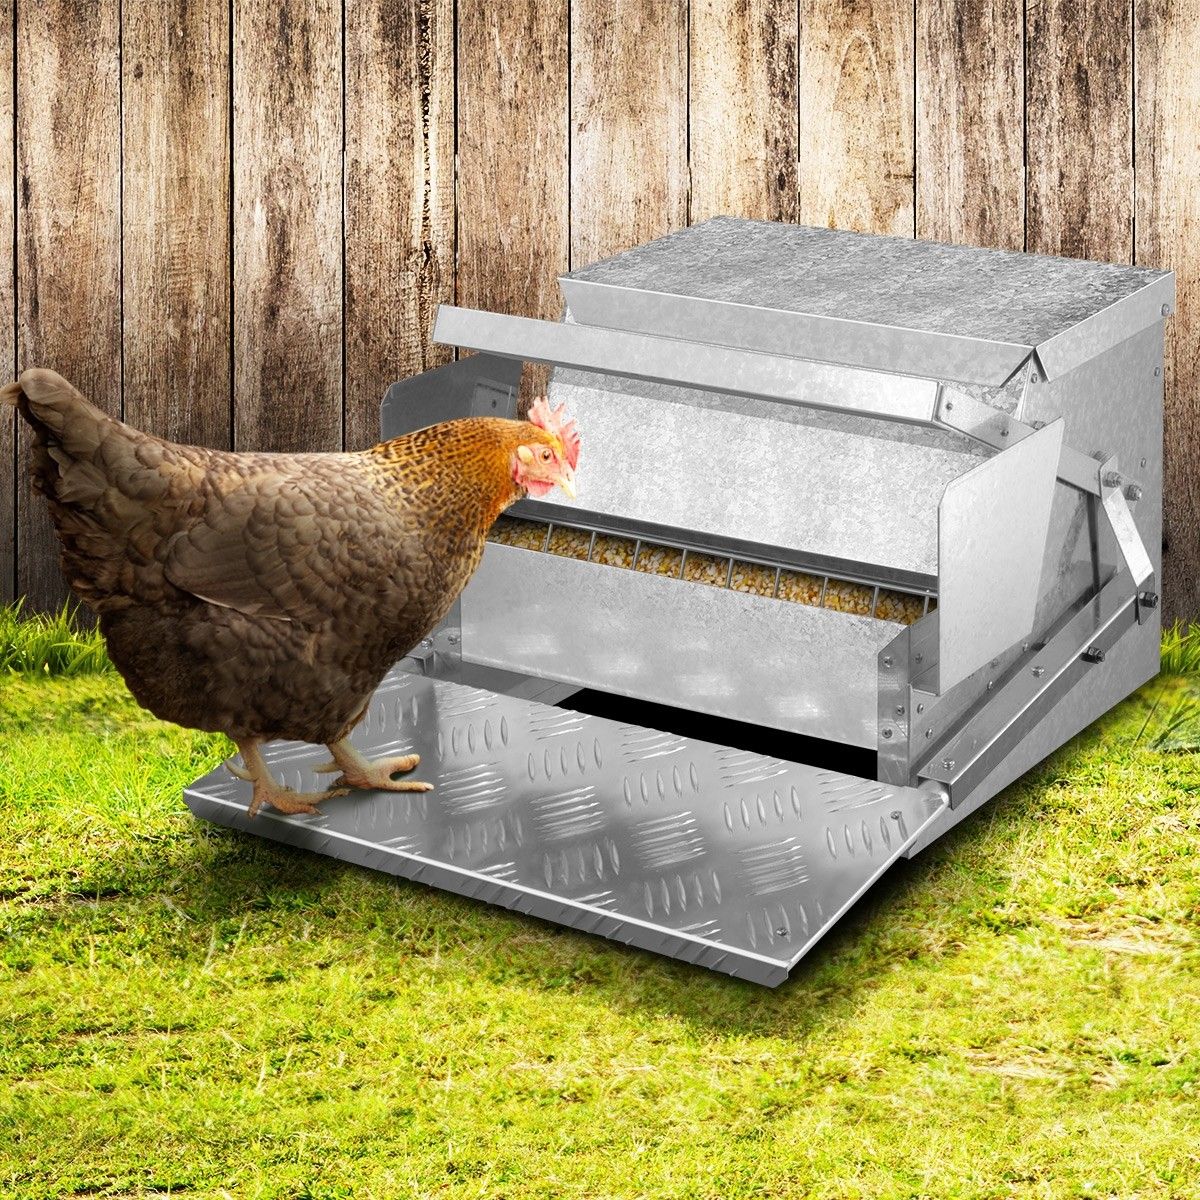 chicken automatic feeder